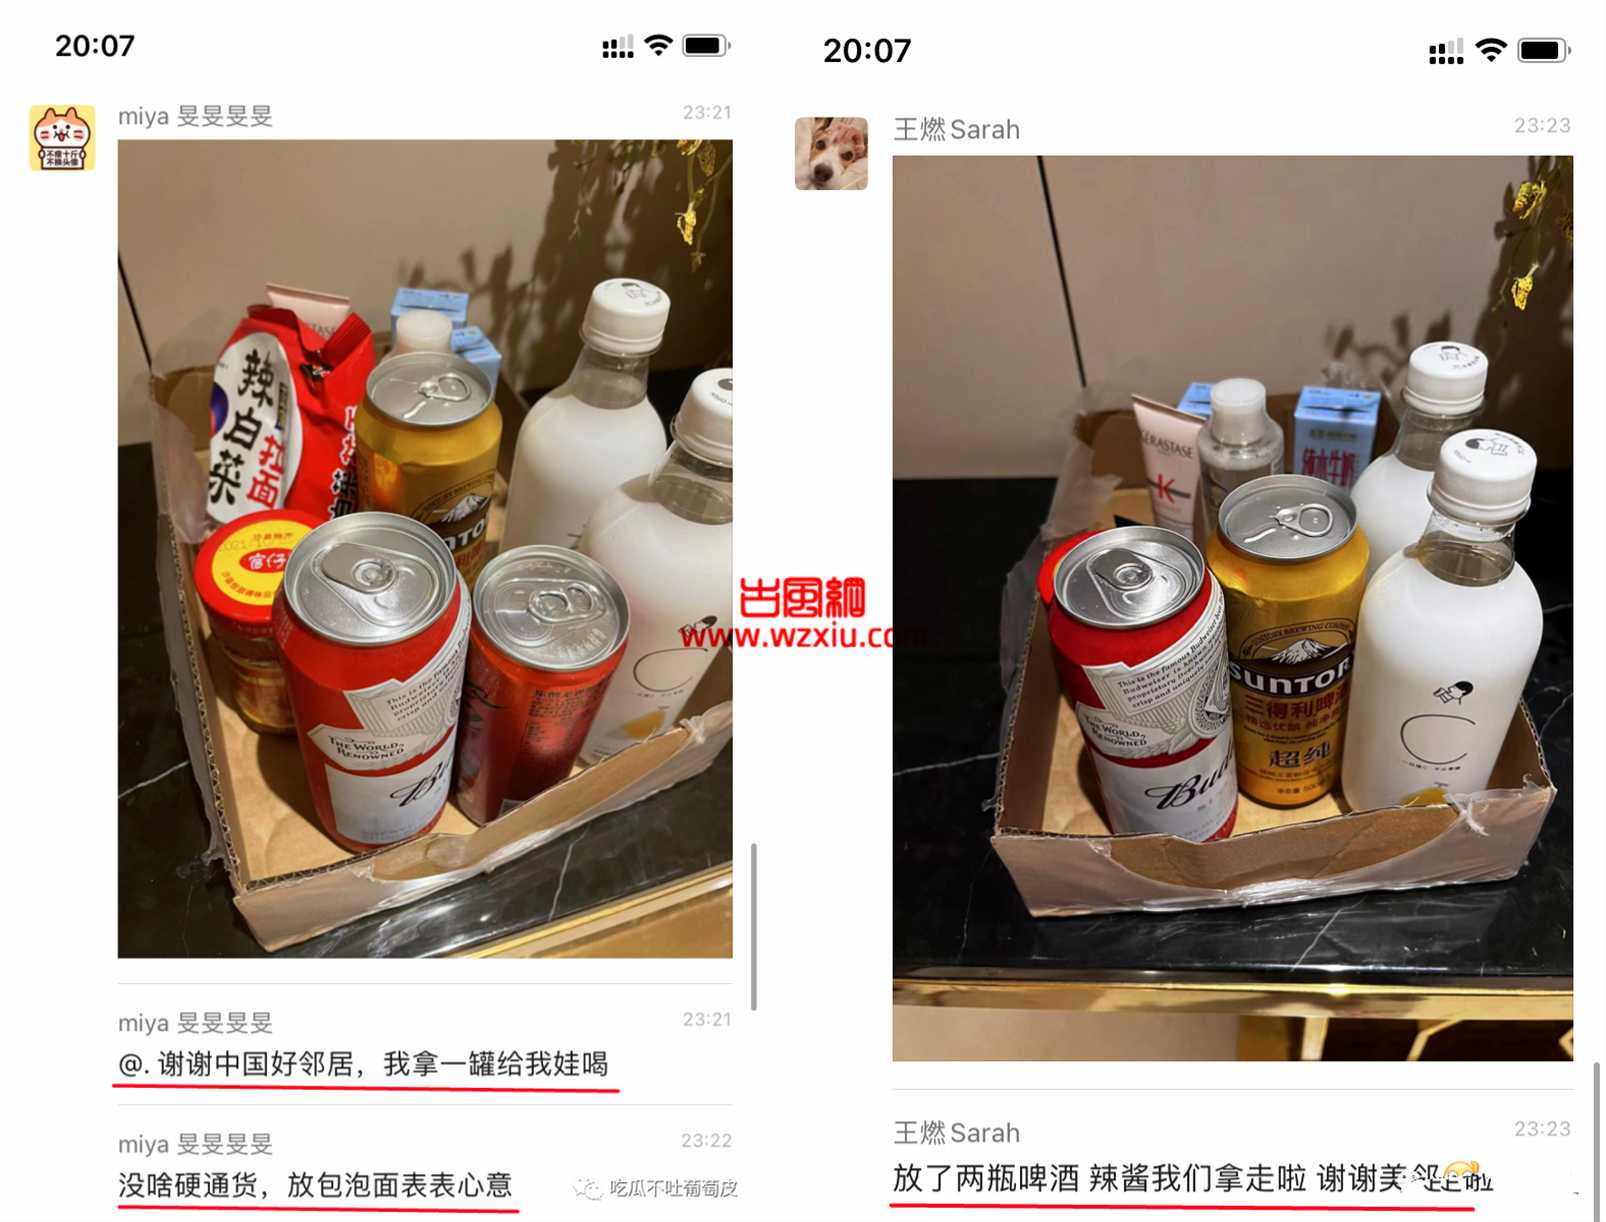 上海小区12罐可乐换出一个小超市?邻里互助抗疫暖人心！